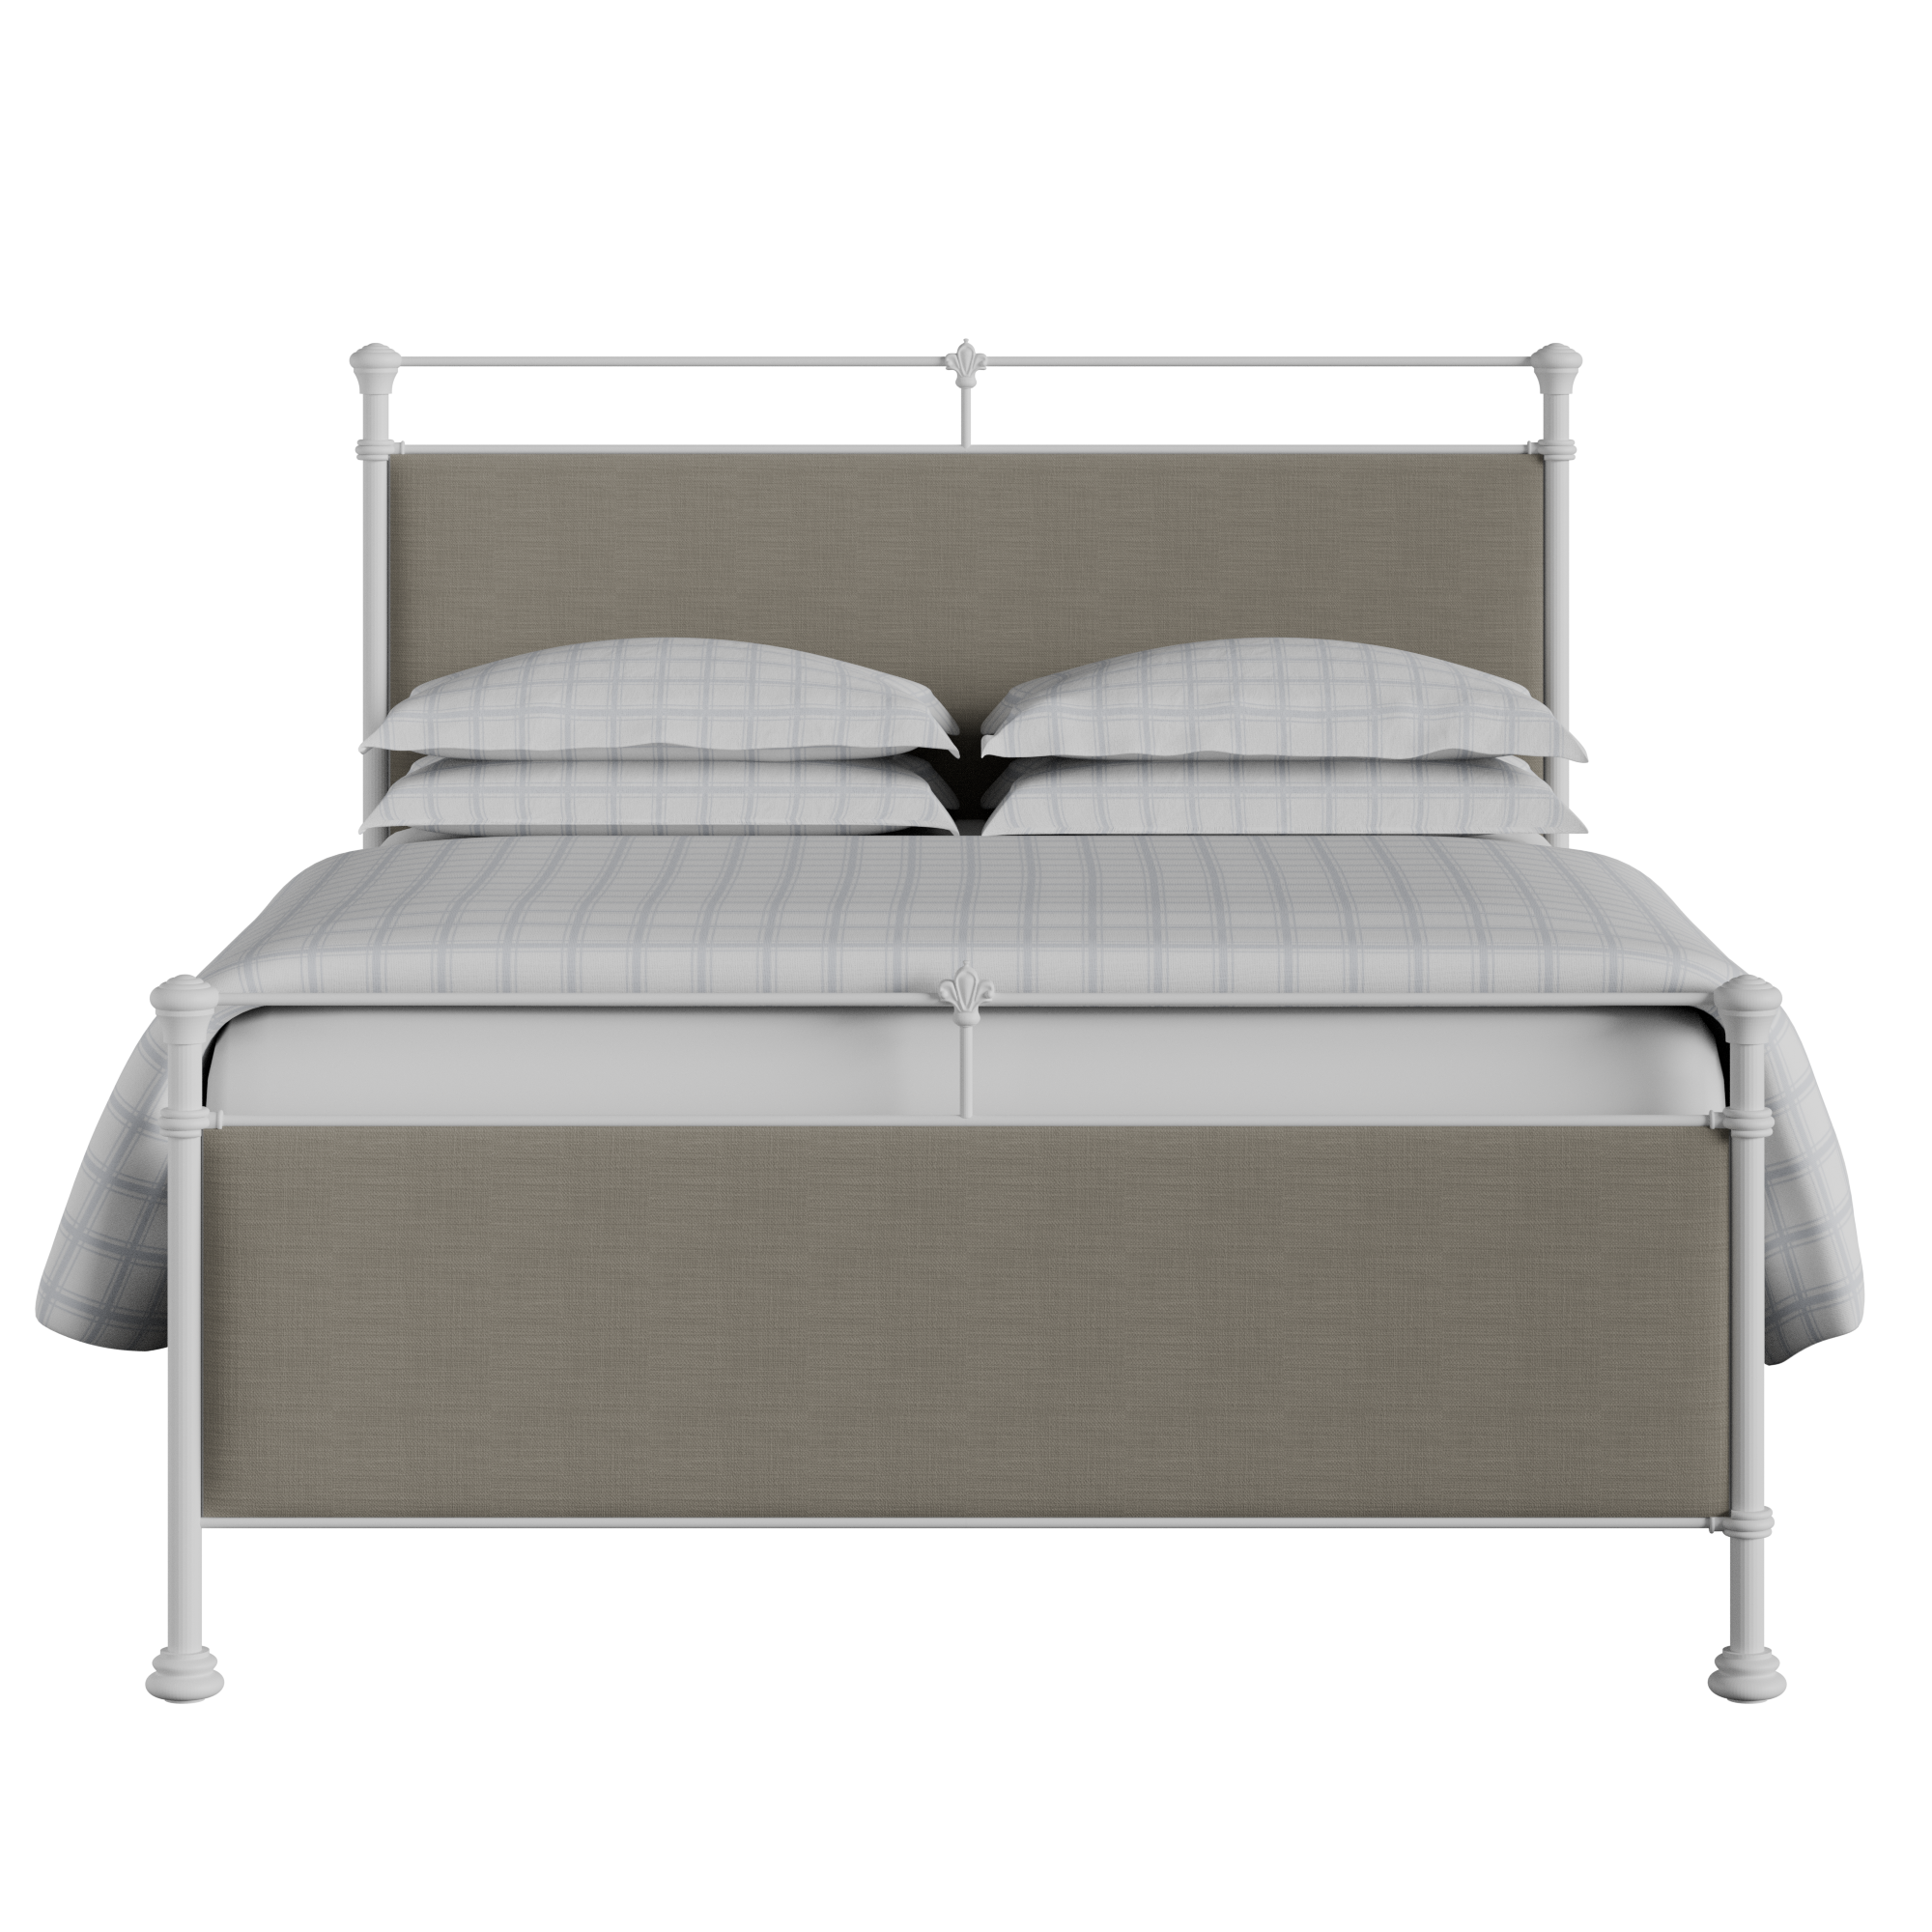 Nancy cama de metal en blanco con tela gris